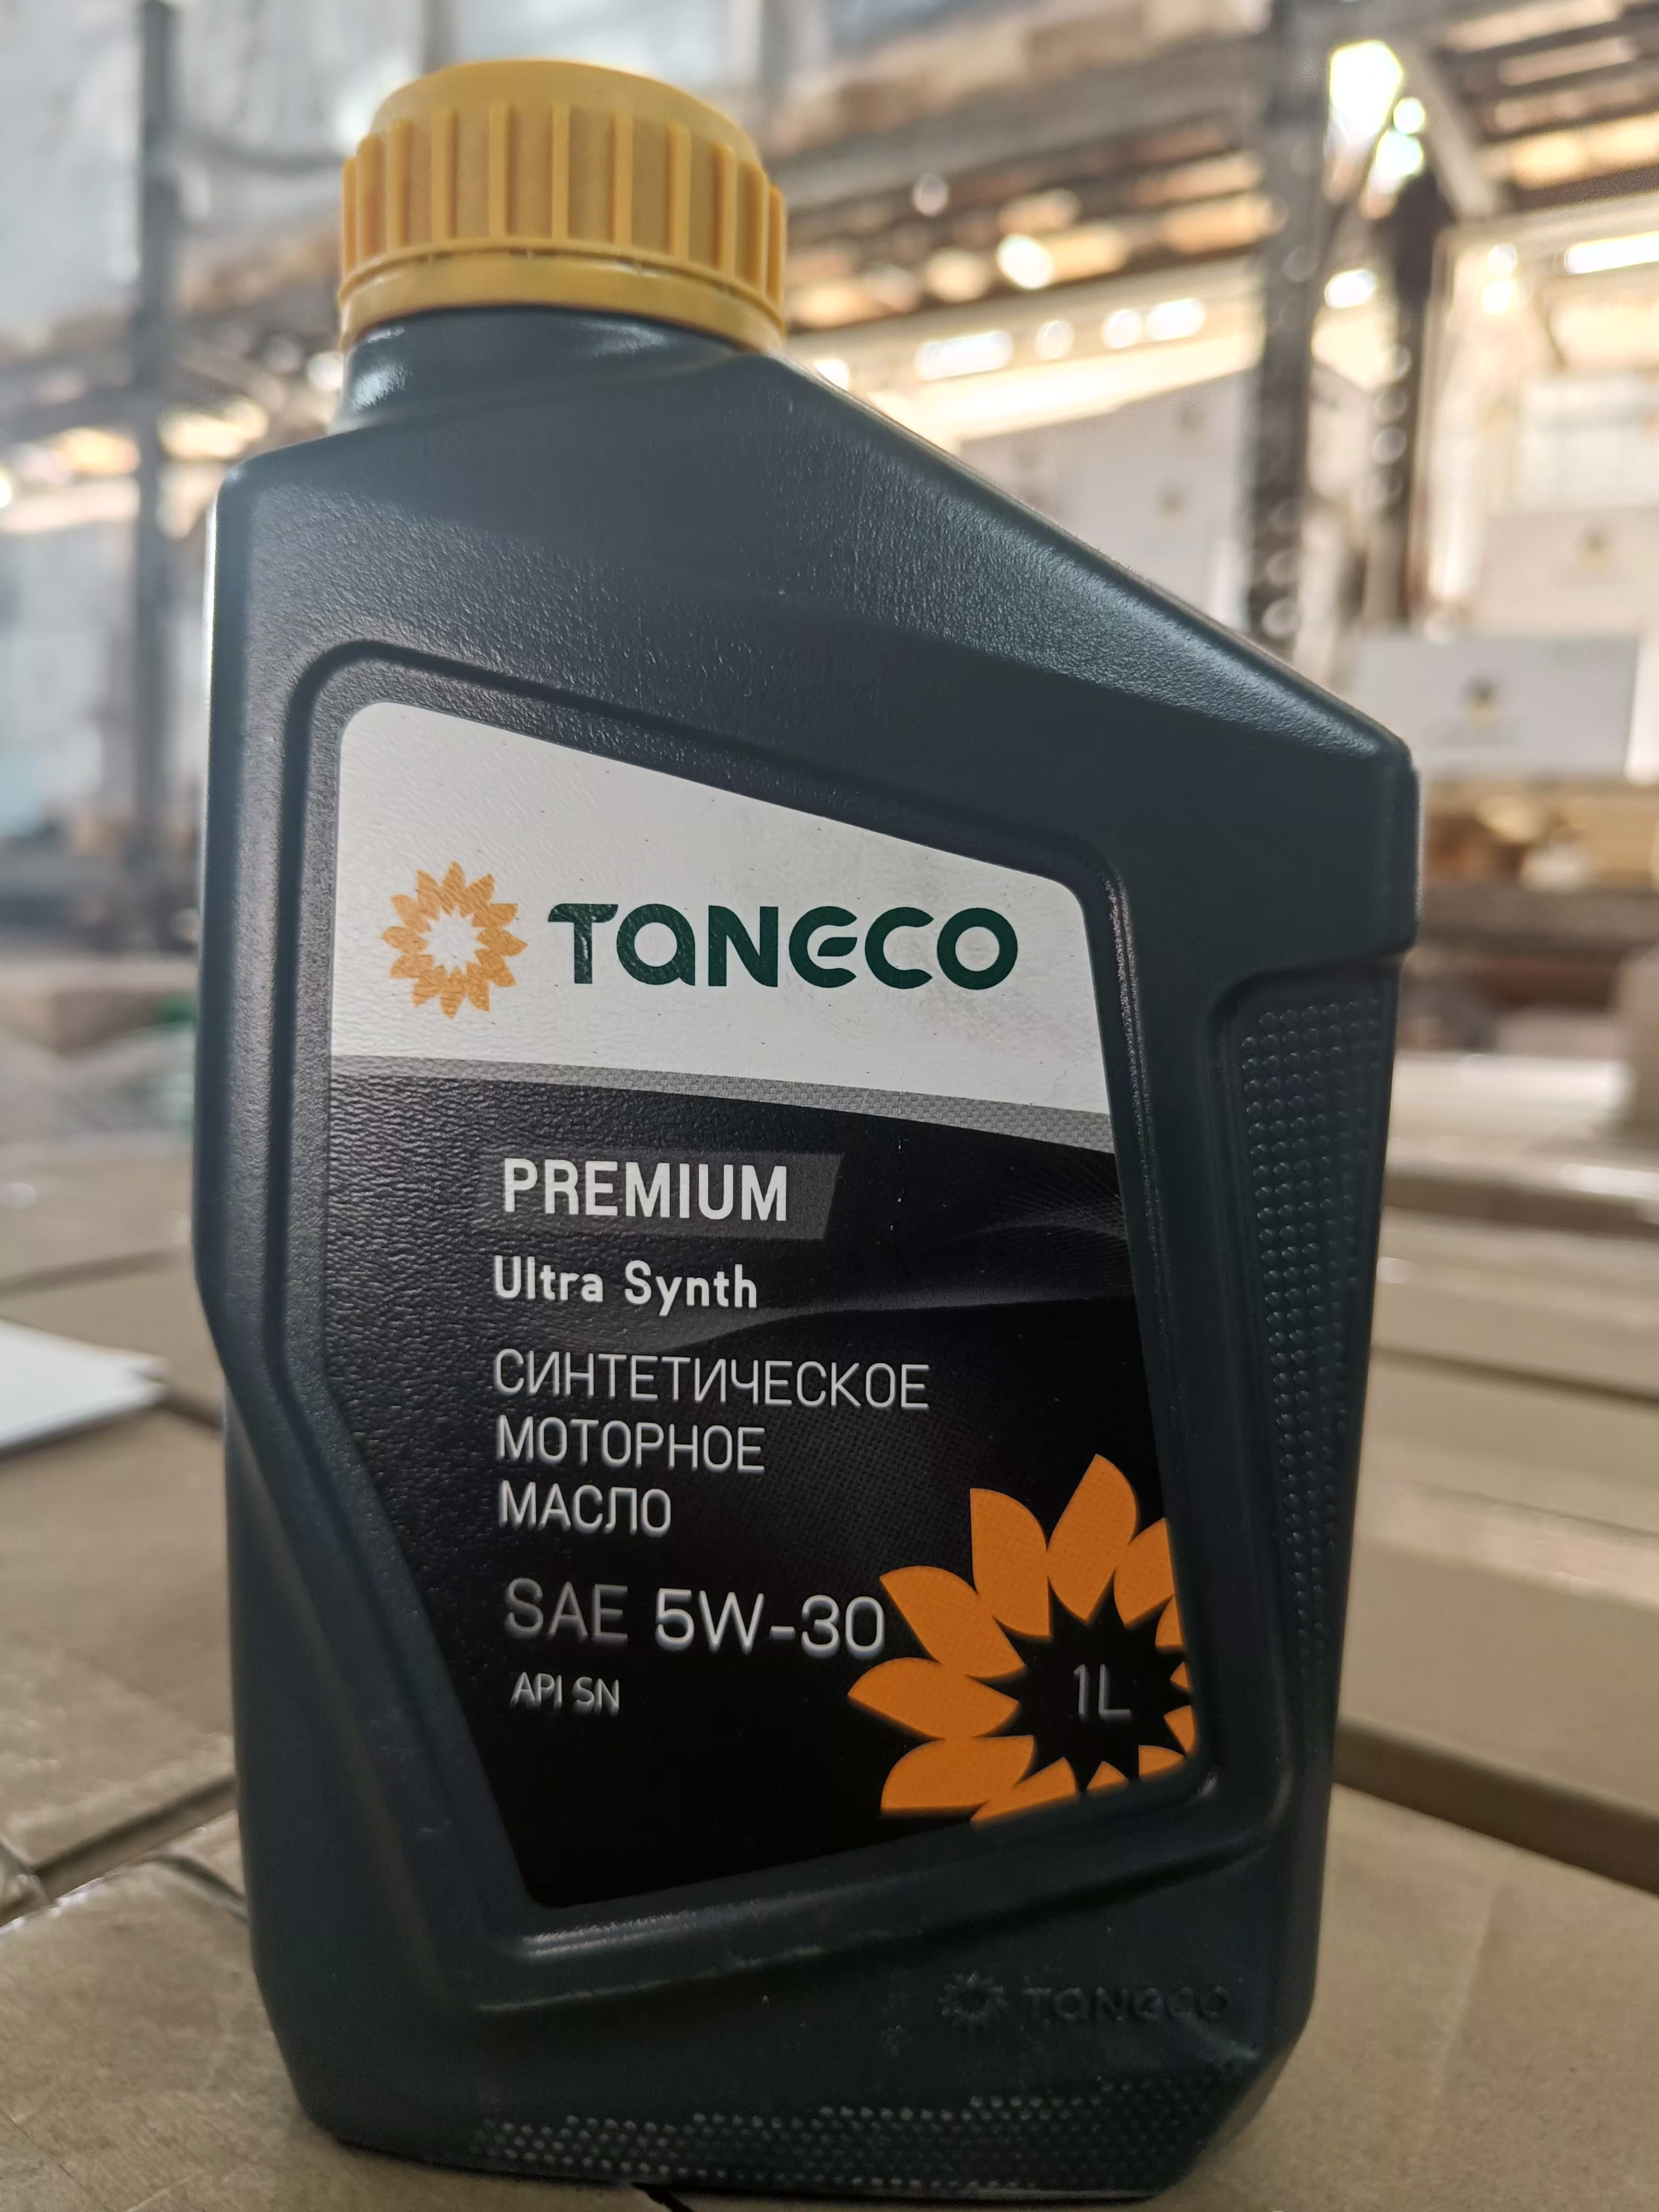 Масло taneco premium. Taneco Ultra Synth 5w30. Taneco 5w30 Premium Ultra. Taneco Premium Ultra Synth. ТАНЕКО премиум ультра синт 5w30.